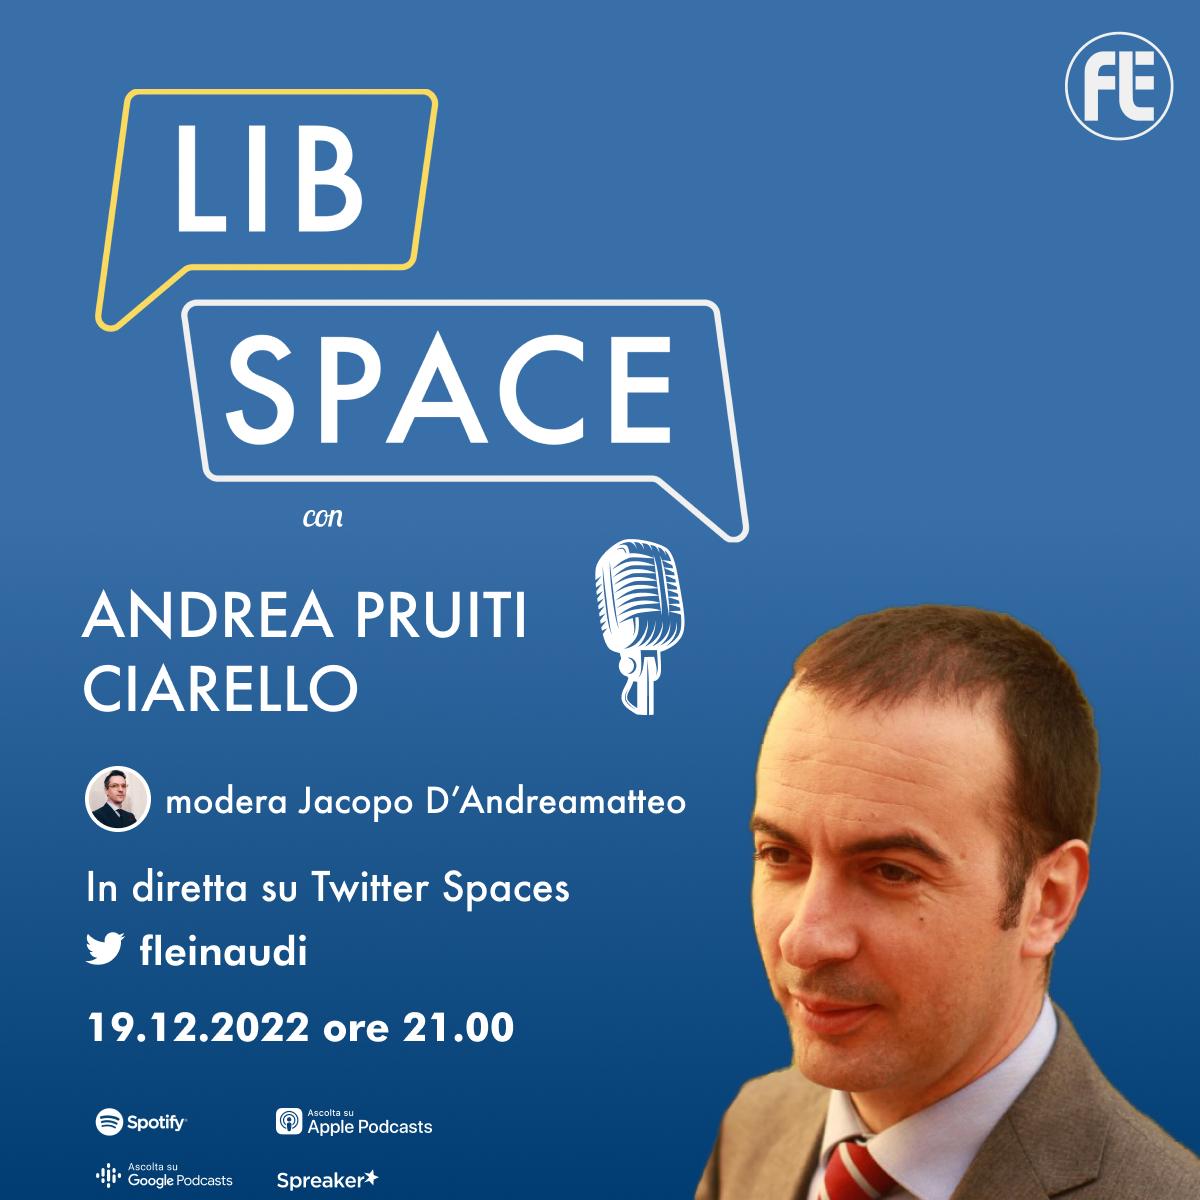 LibSpace con Andrea Pruiti Ciarello